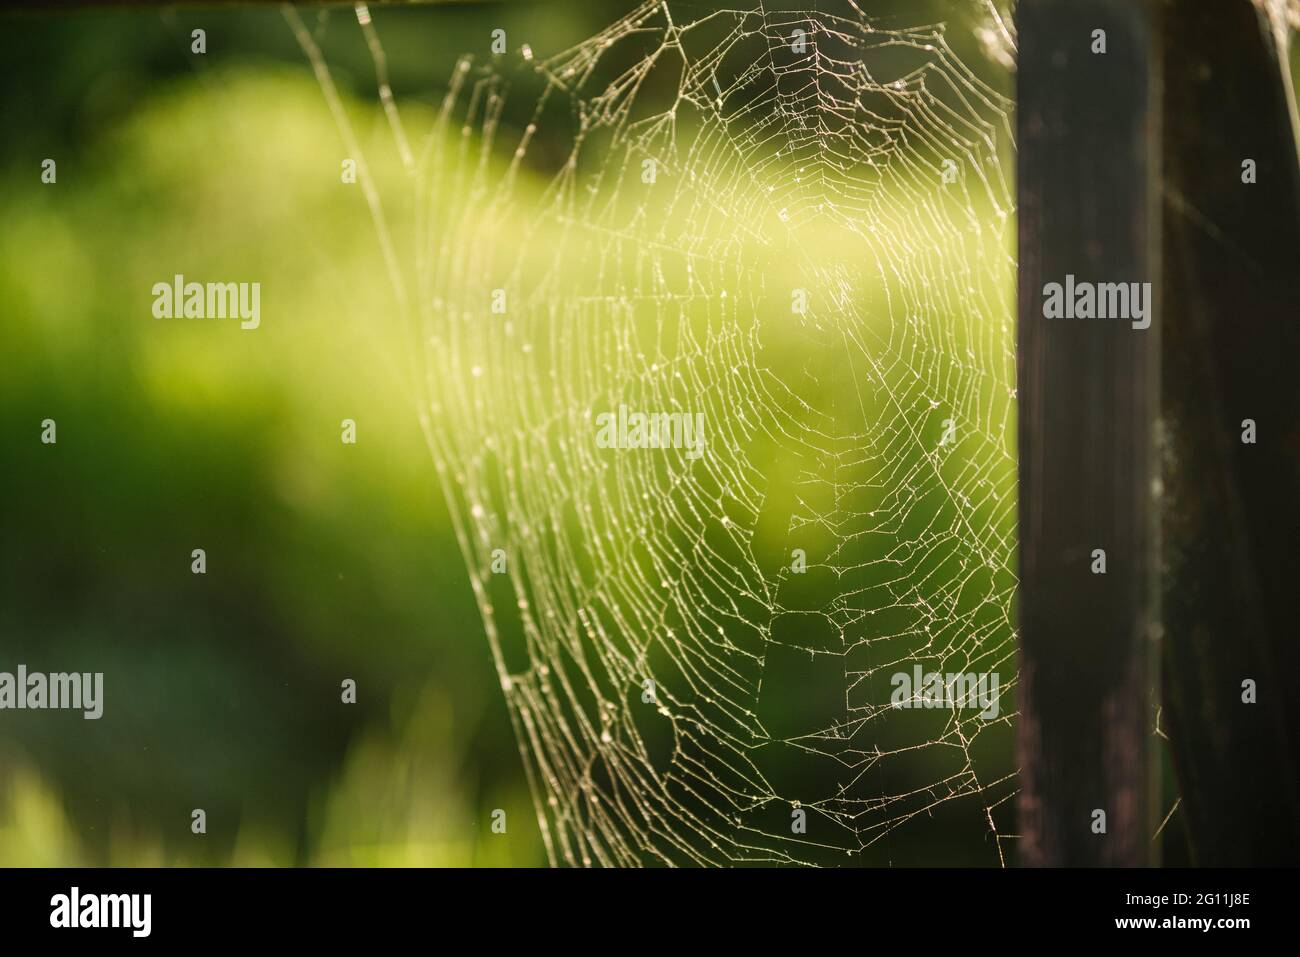 Canada, Ontario, Spiderweb in green field Stock Photo